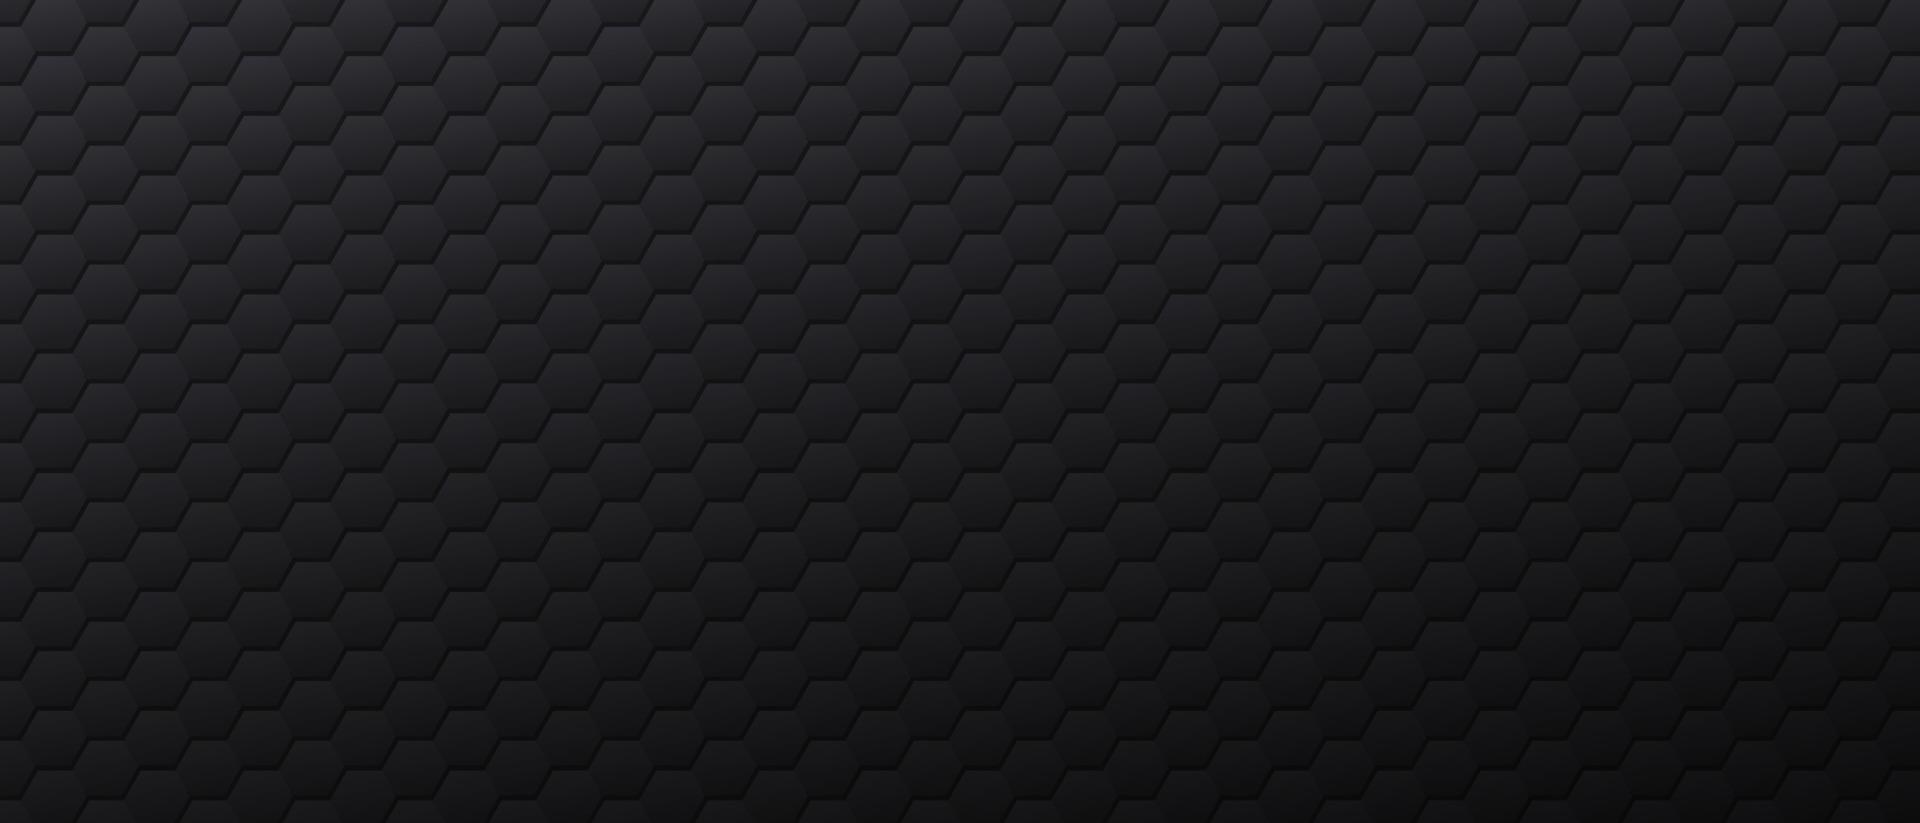 pancarta negra con formas hexagonales. plantilla de fondo de carbón oscuro decorada con celdas poligonales, textura con hexágonos o panales. fondo celular. ilustración vectorial monocromática moderna. vector